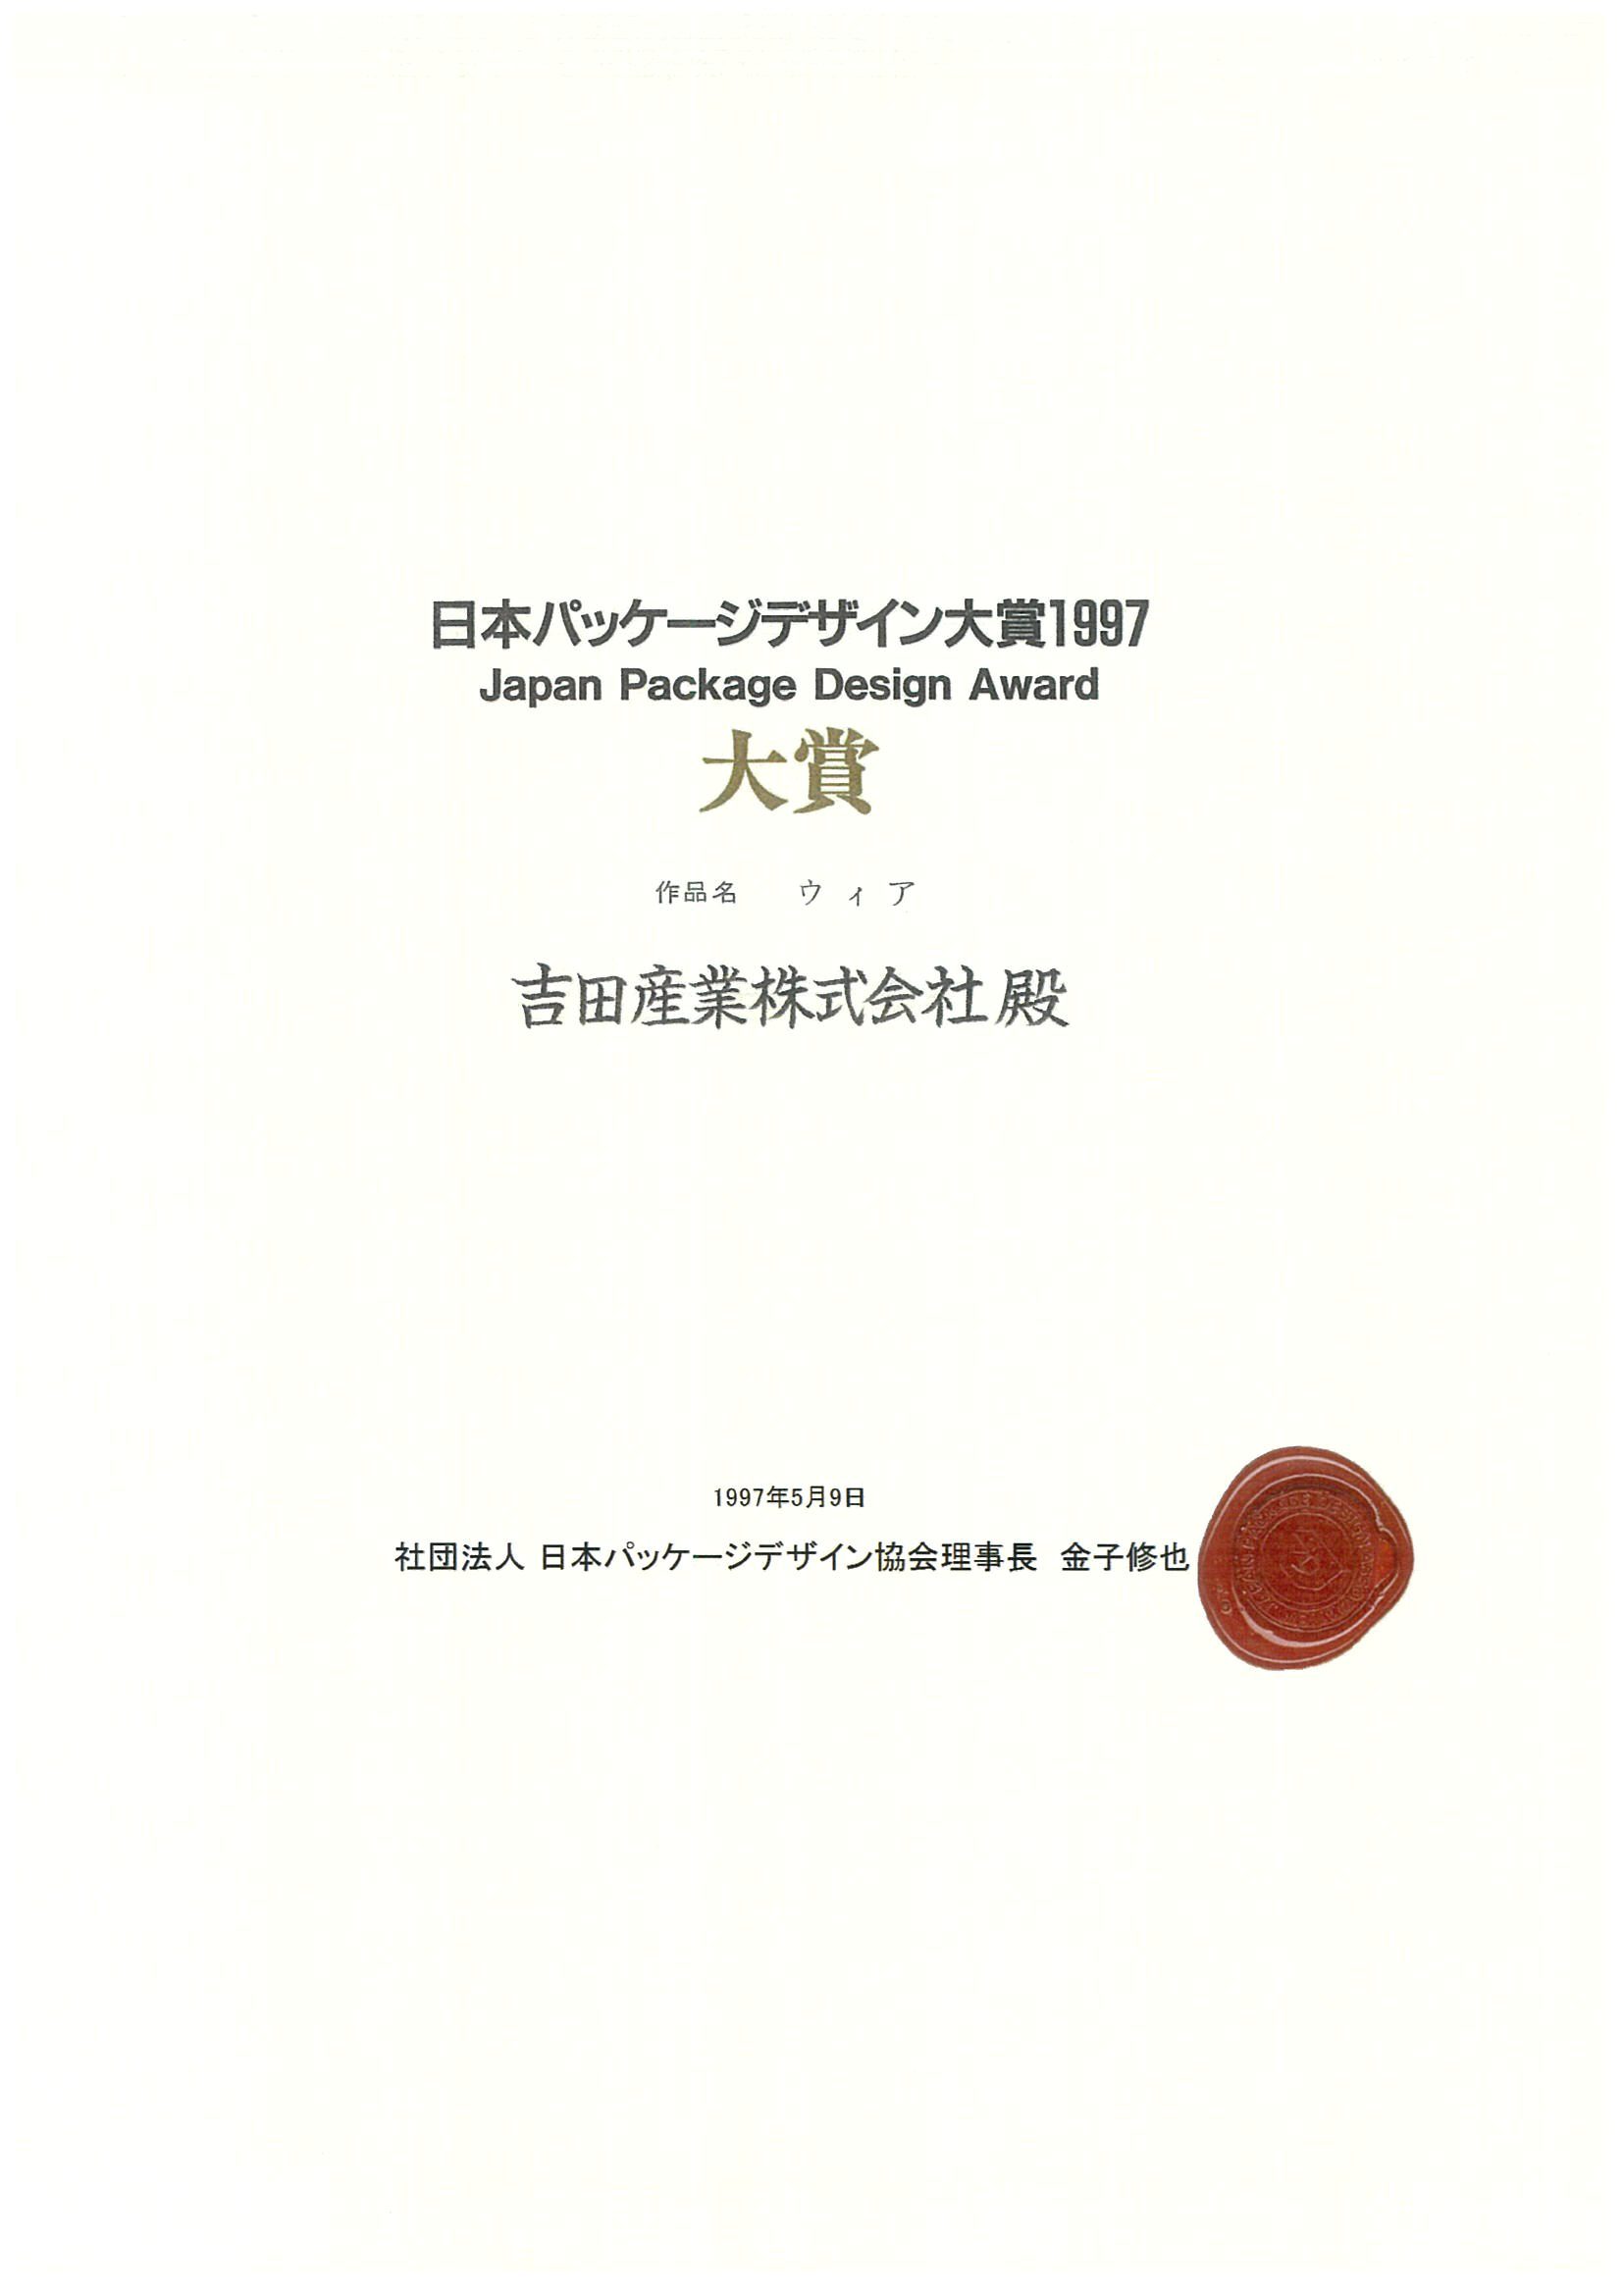 日本パッケージデザイン大賞1997